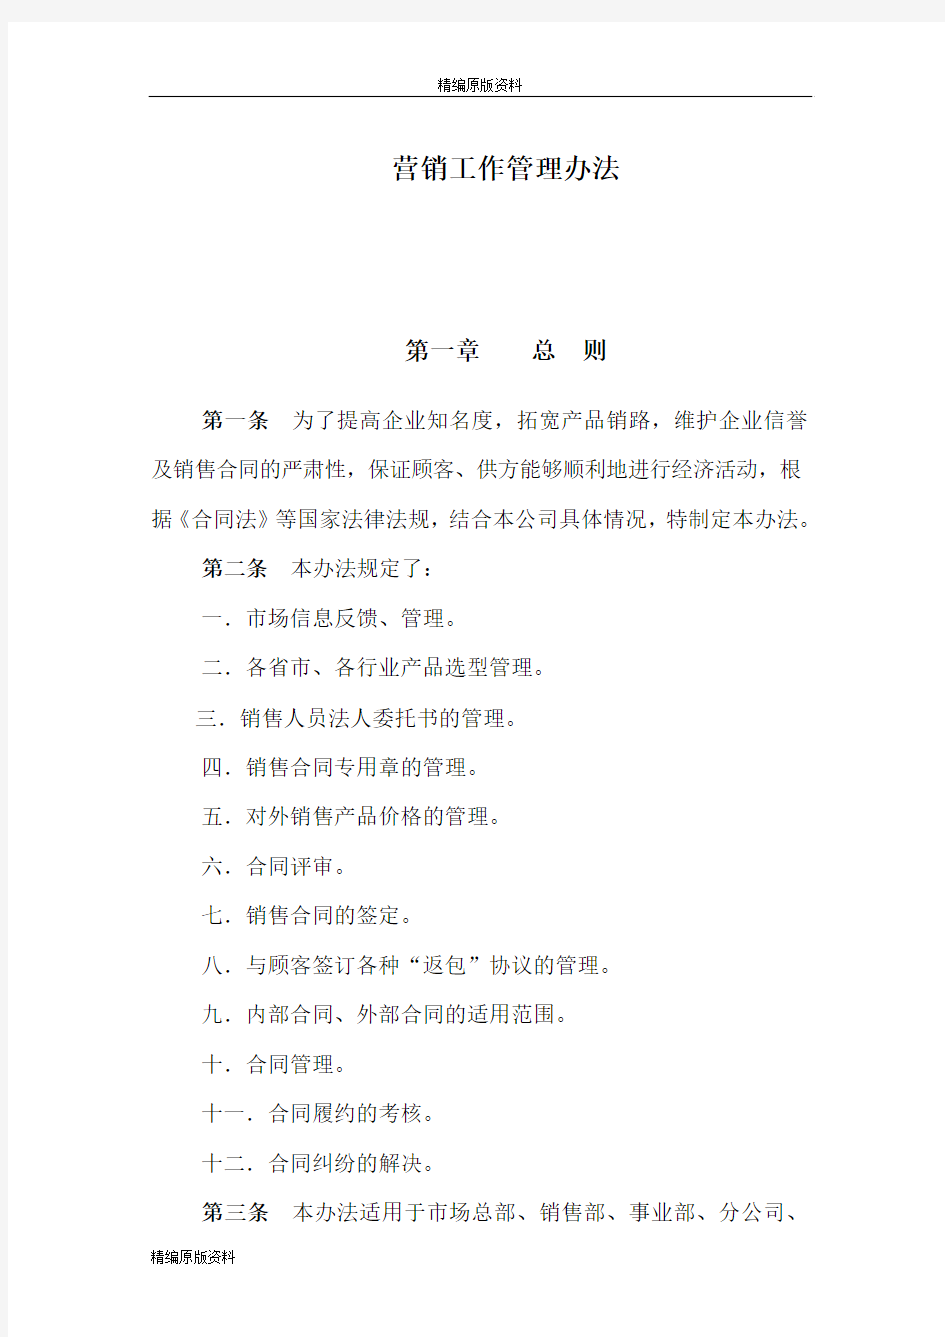 【精编原版】北京首信股份有限公司营销工作管理办法